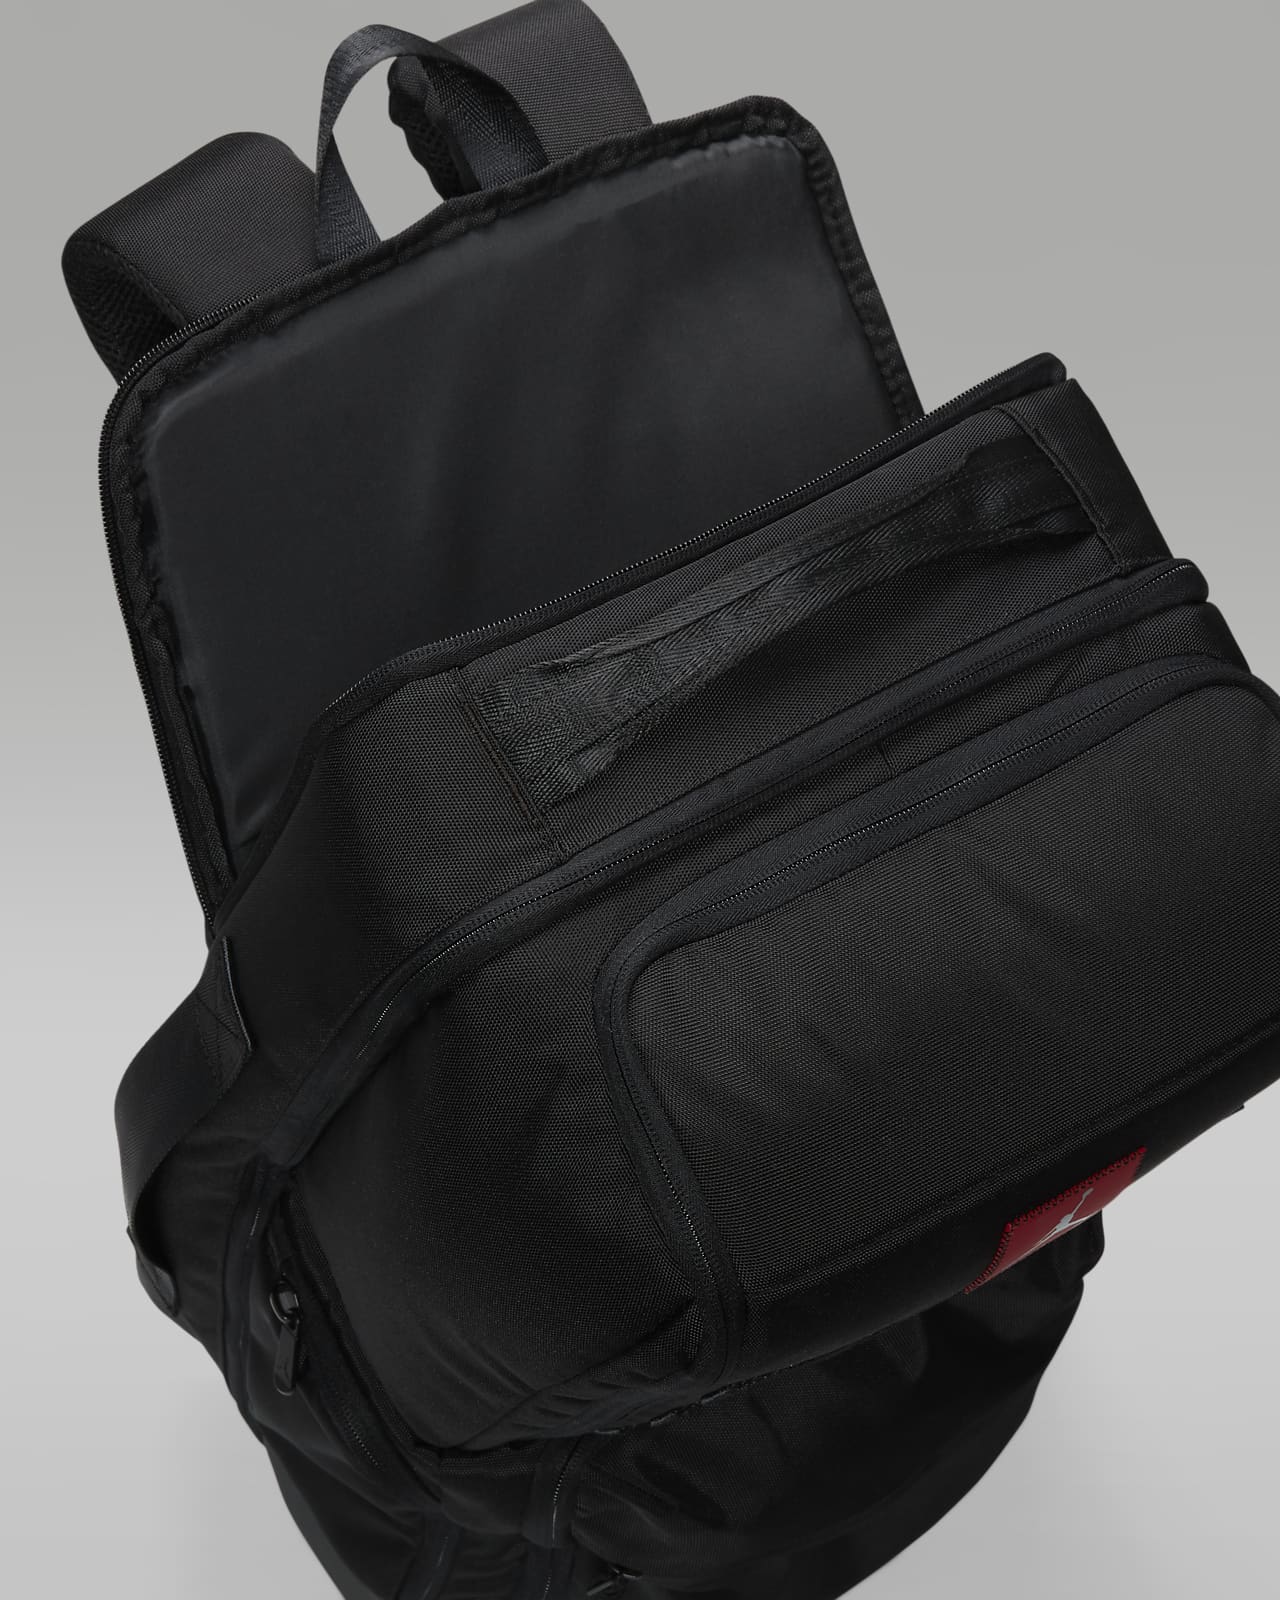 Jordan Collector's Backpack Shoe Organizer Backpack (31.5L).